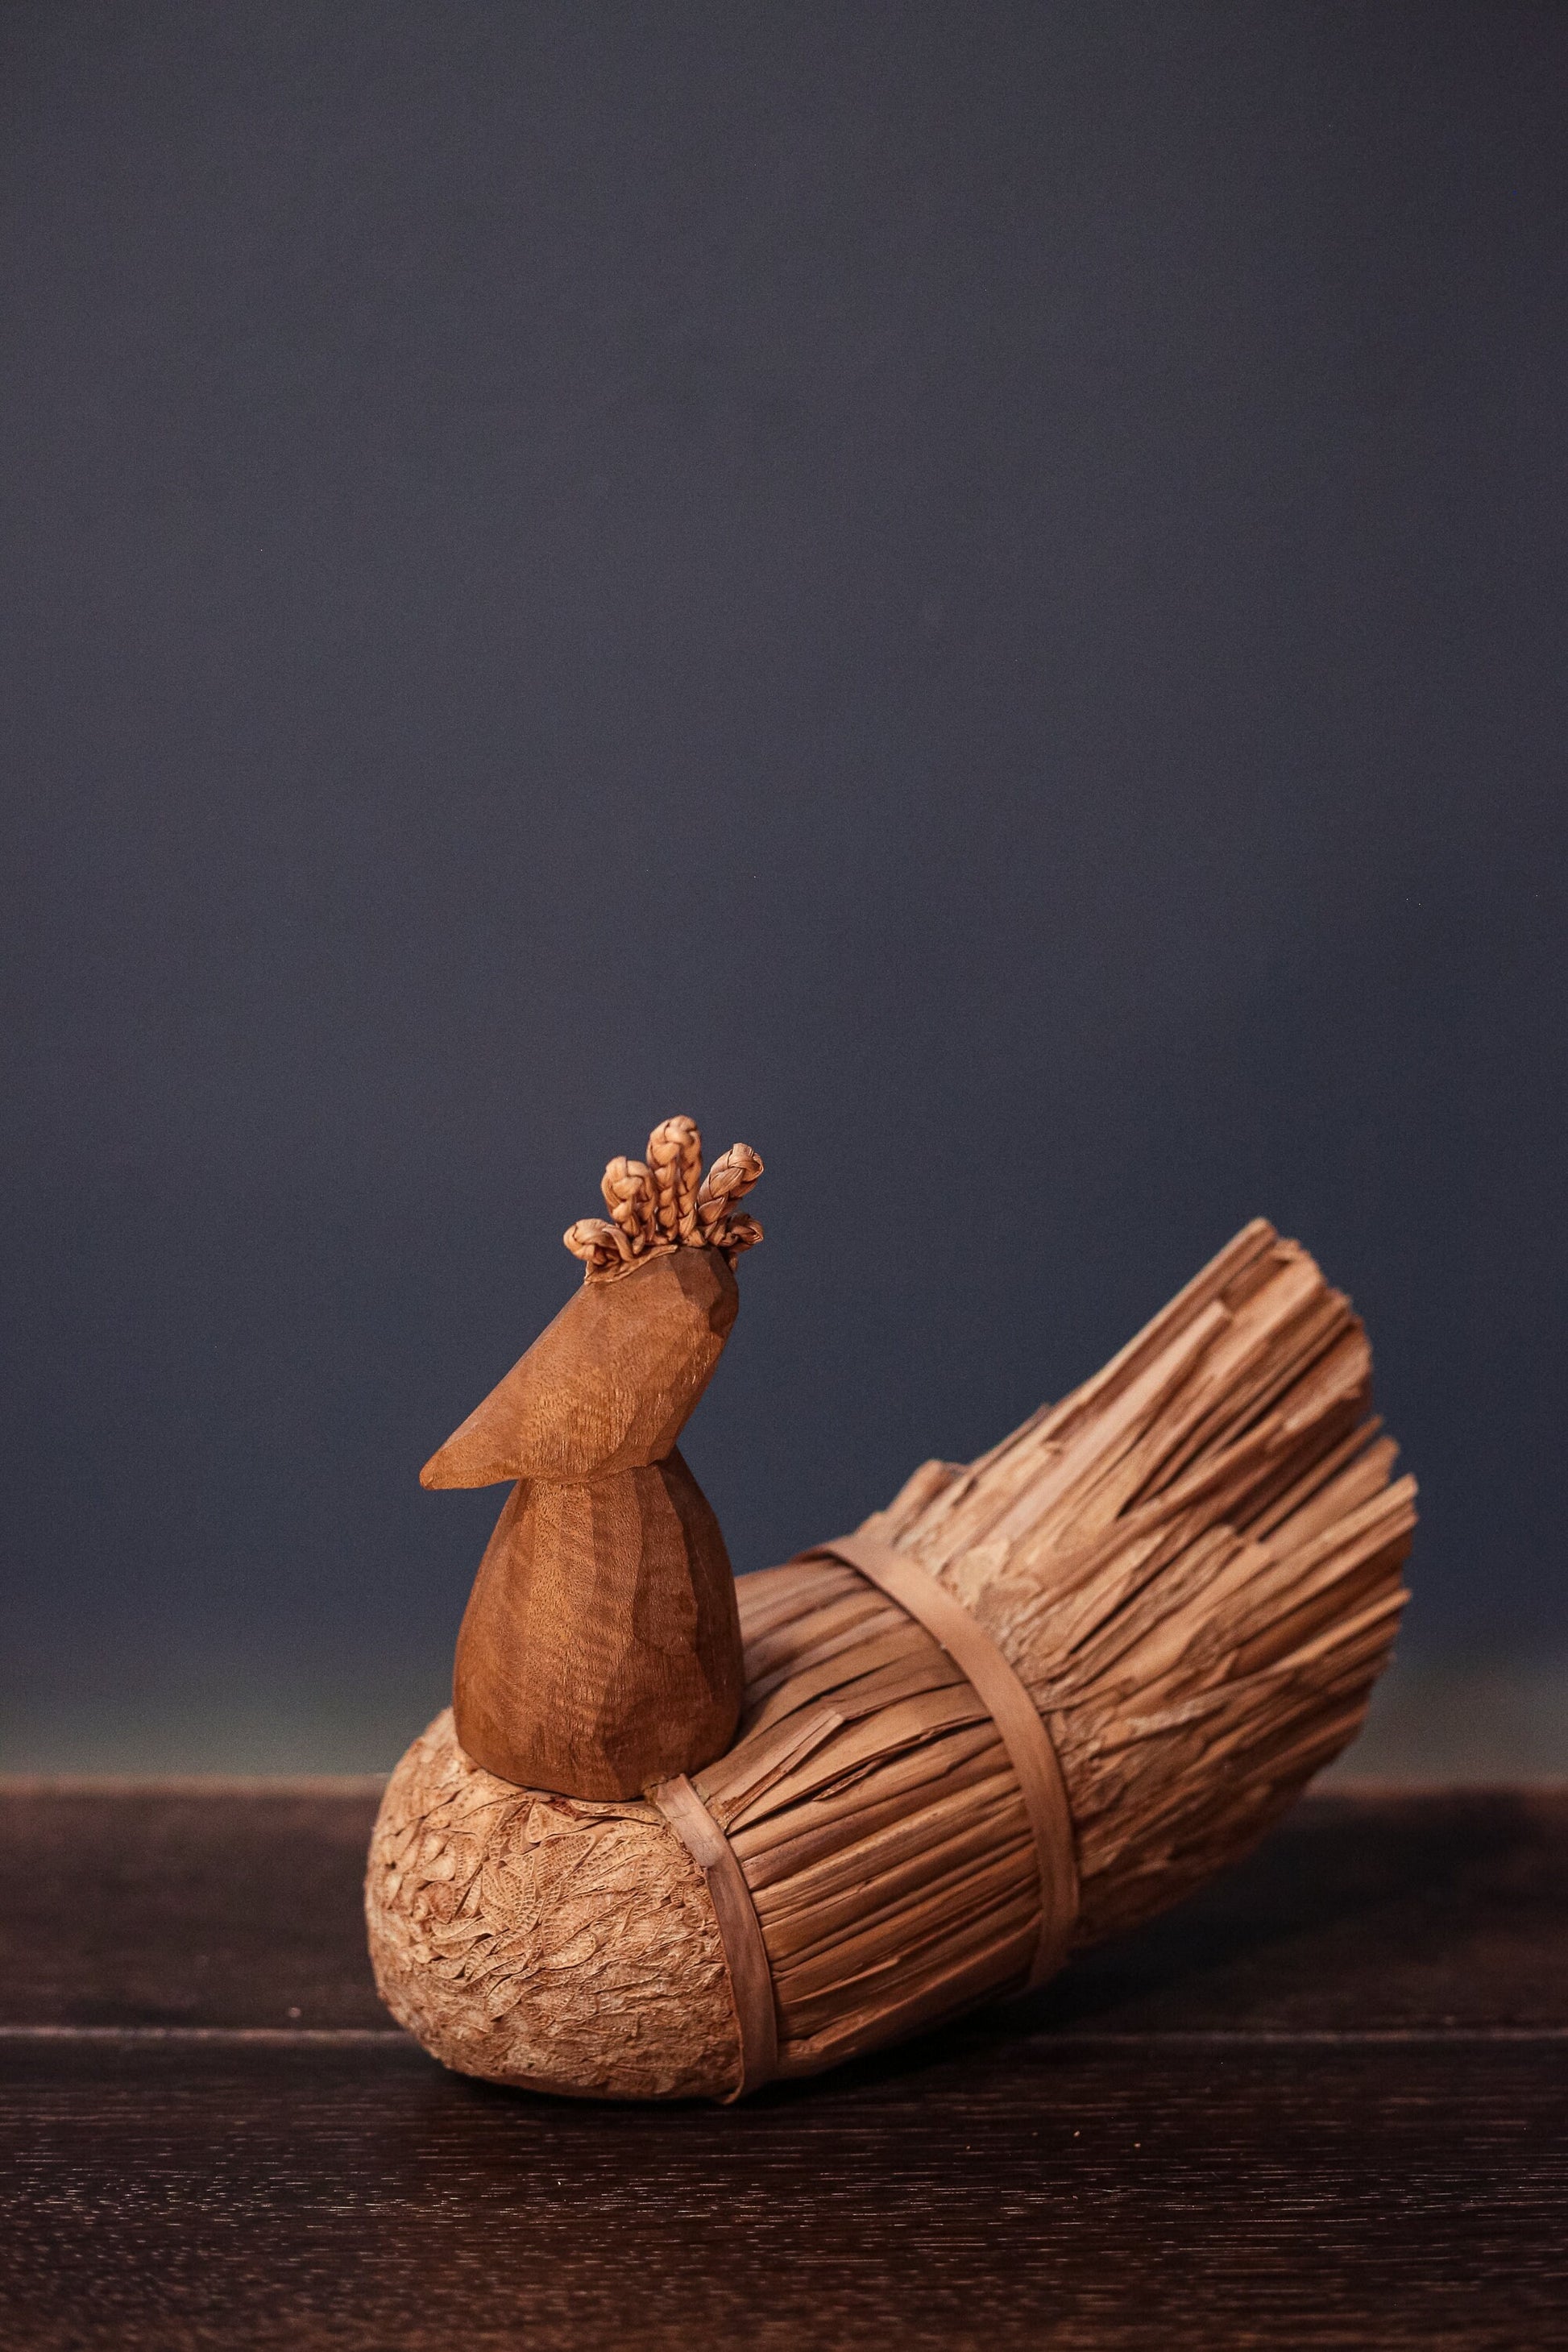 Carved Wood Turkey Figure - Vintage Farmhouse Holiday Decor